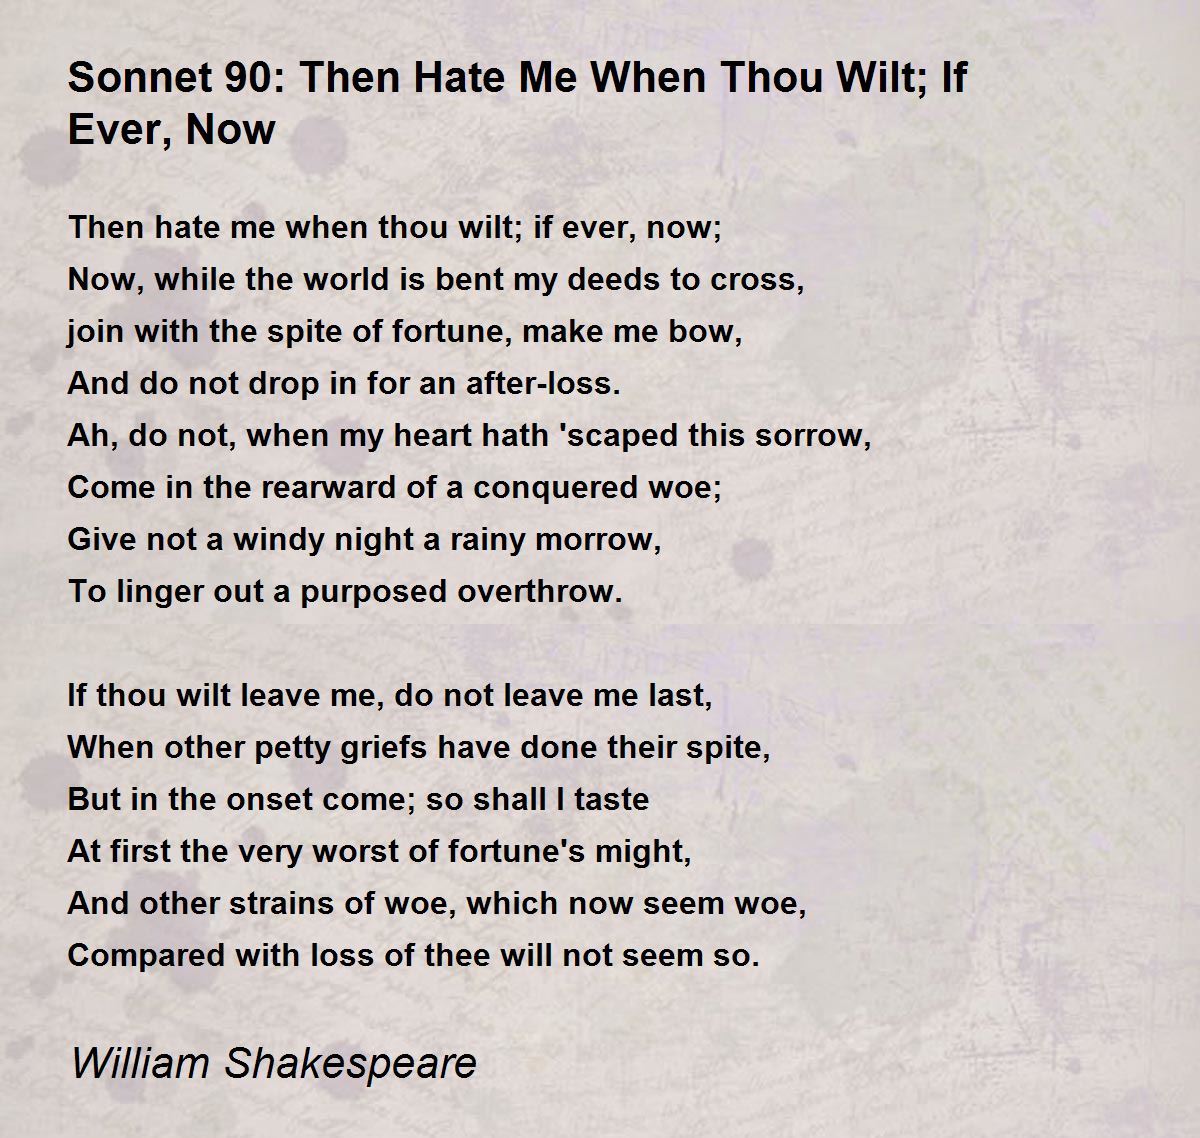 sonnet 90